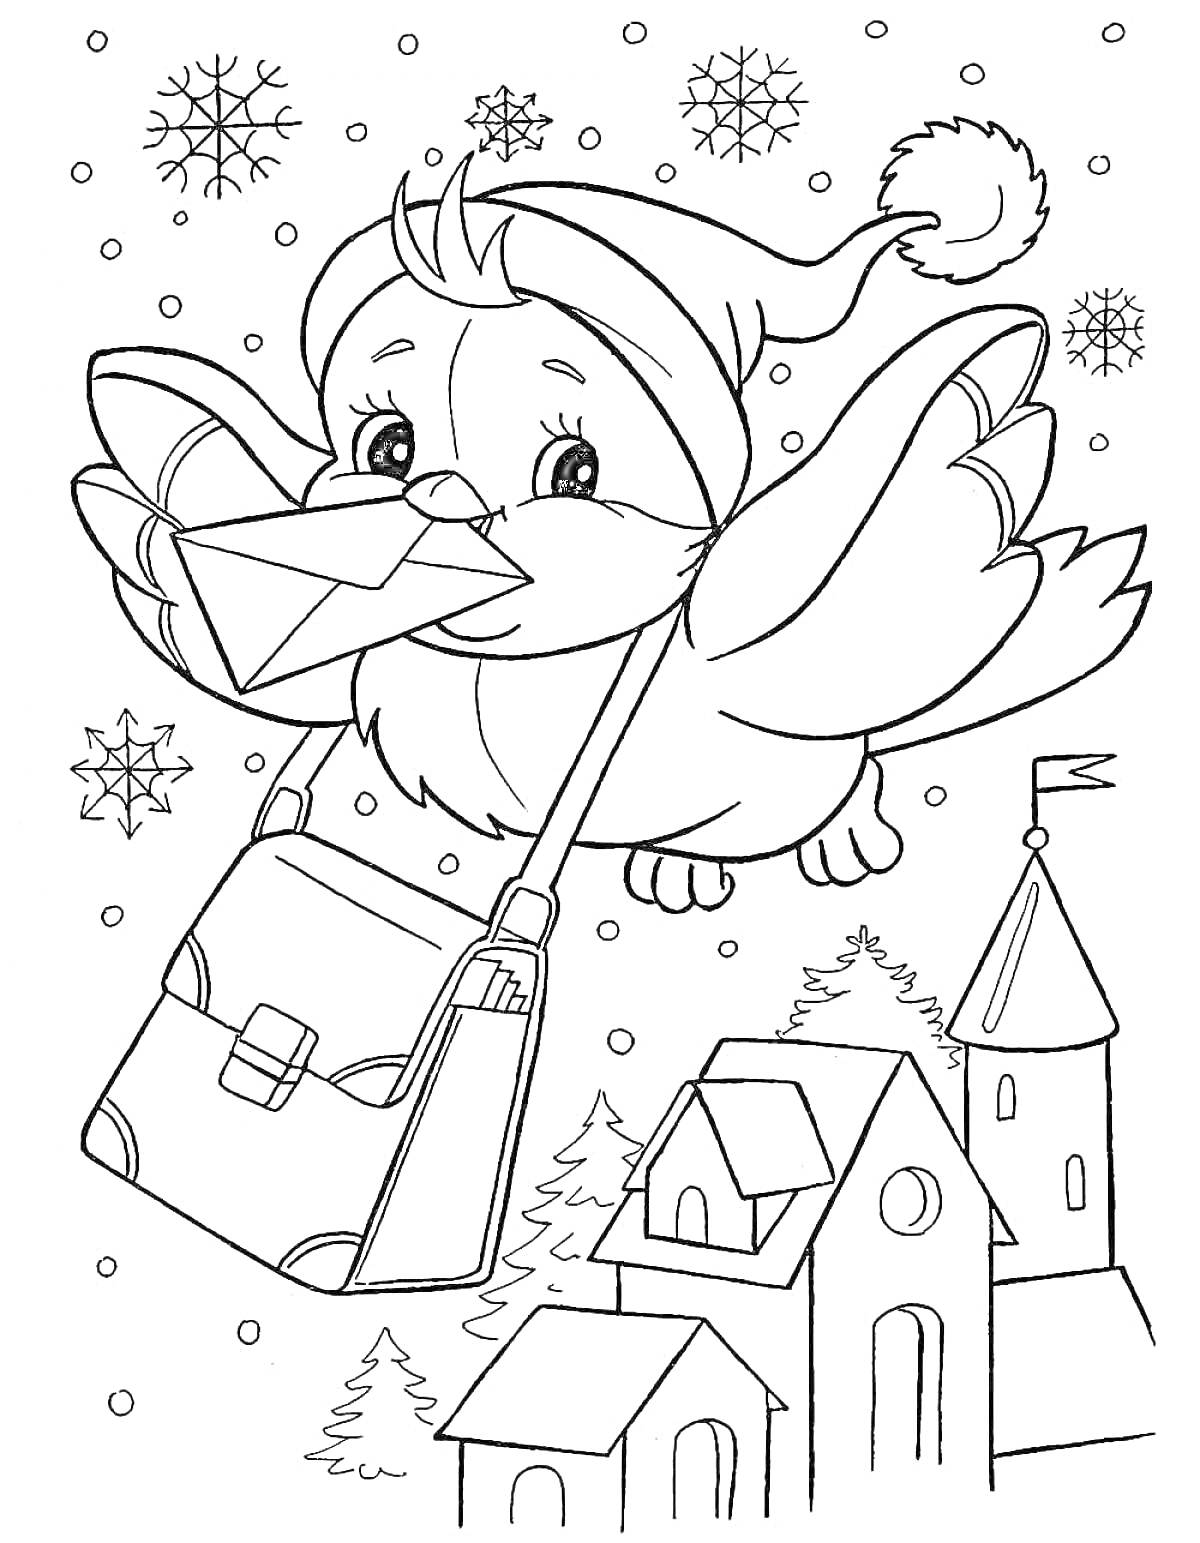 Раскраска Птица-почтальон в зимней шапке с письмом и сумкой, летящая над домами и деревьями с падающими снежинками